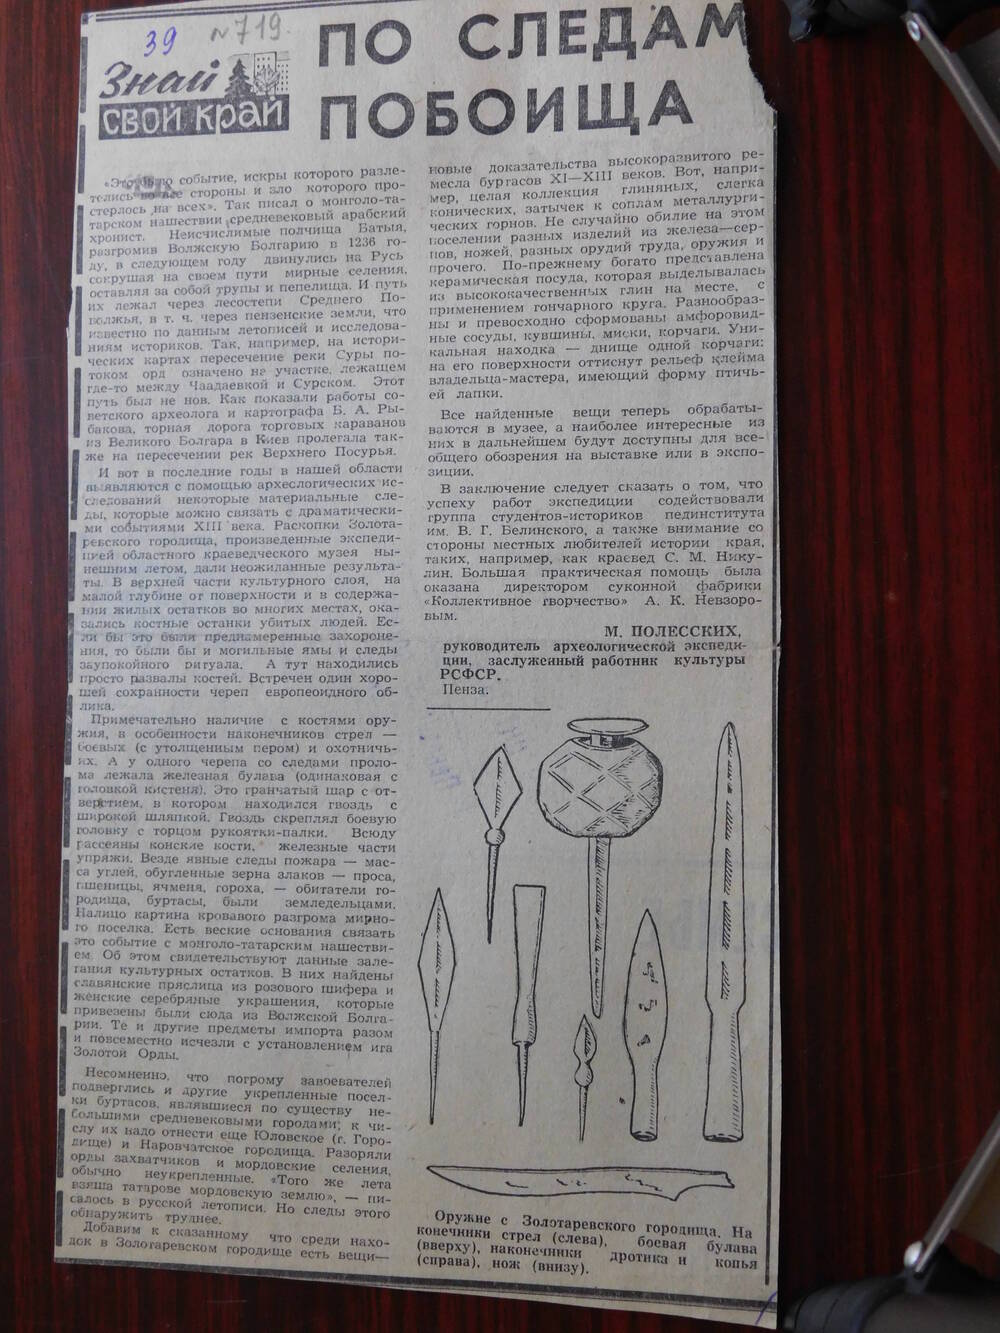 Фрагмент газеты Тезенская правда от 29.10.1976 г. Ст. М. Полесских. По следам побоища. Пенза.